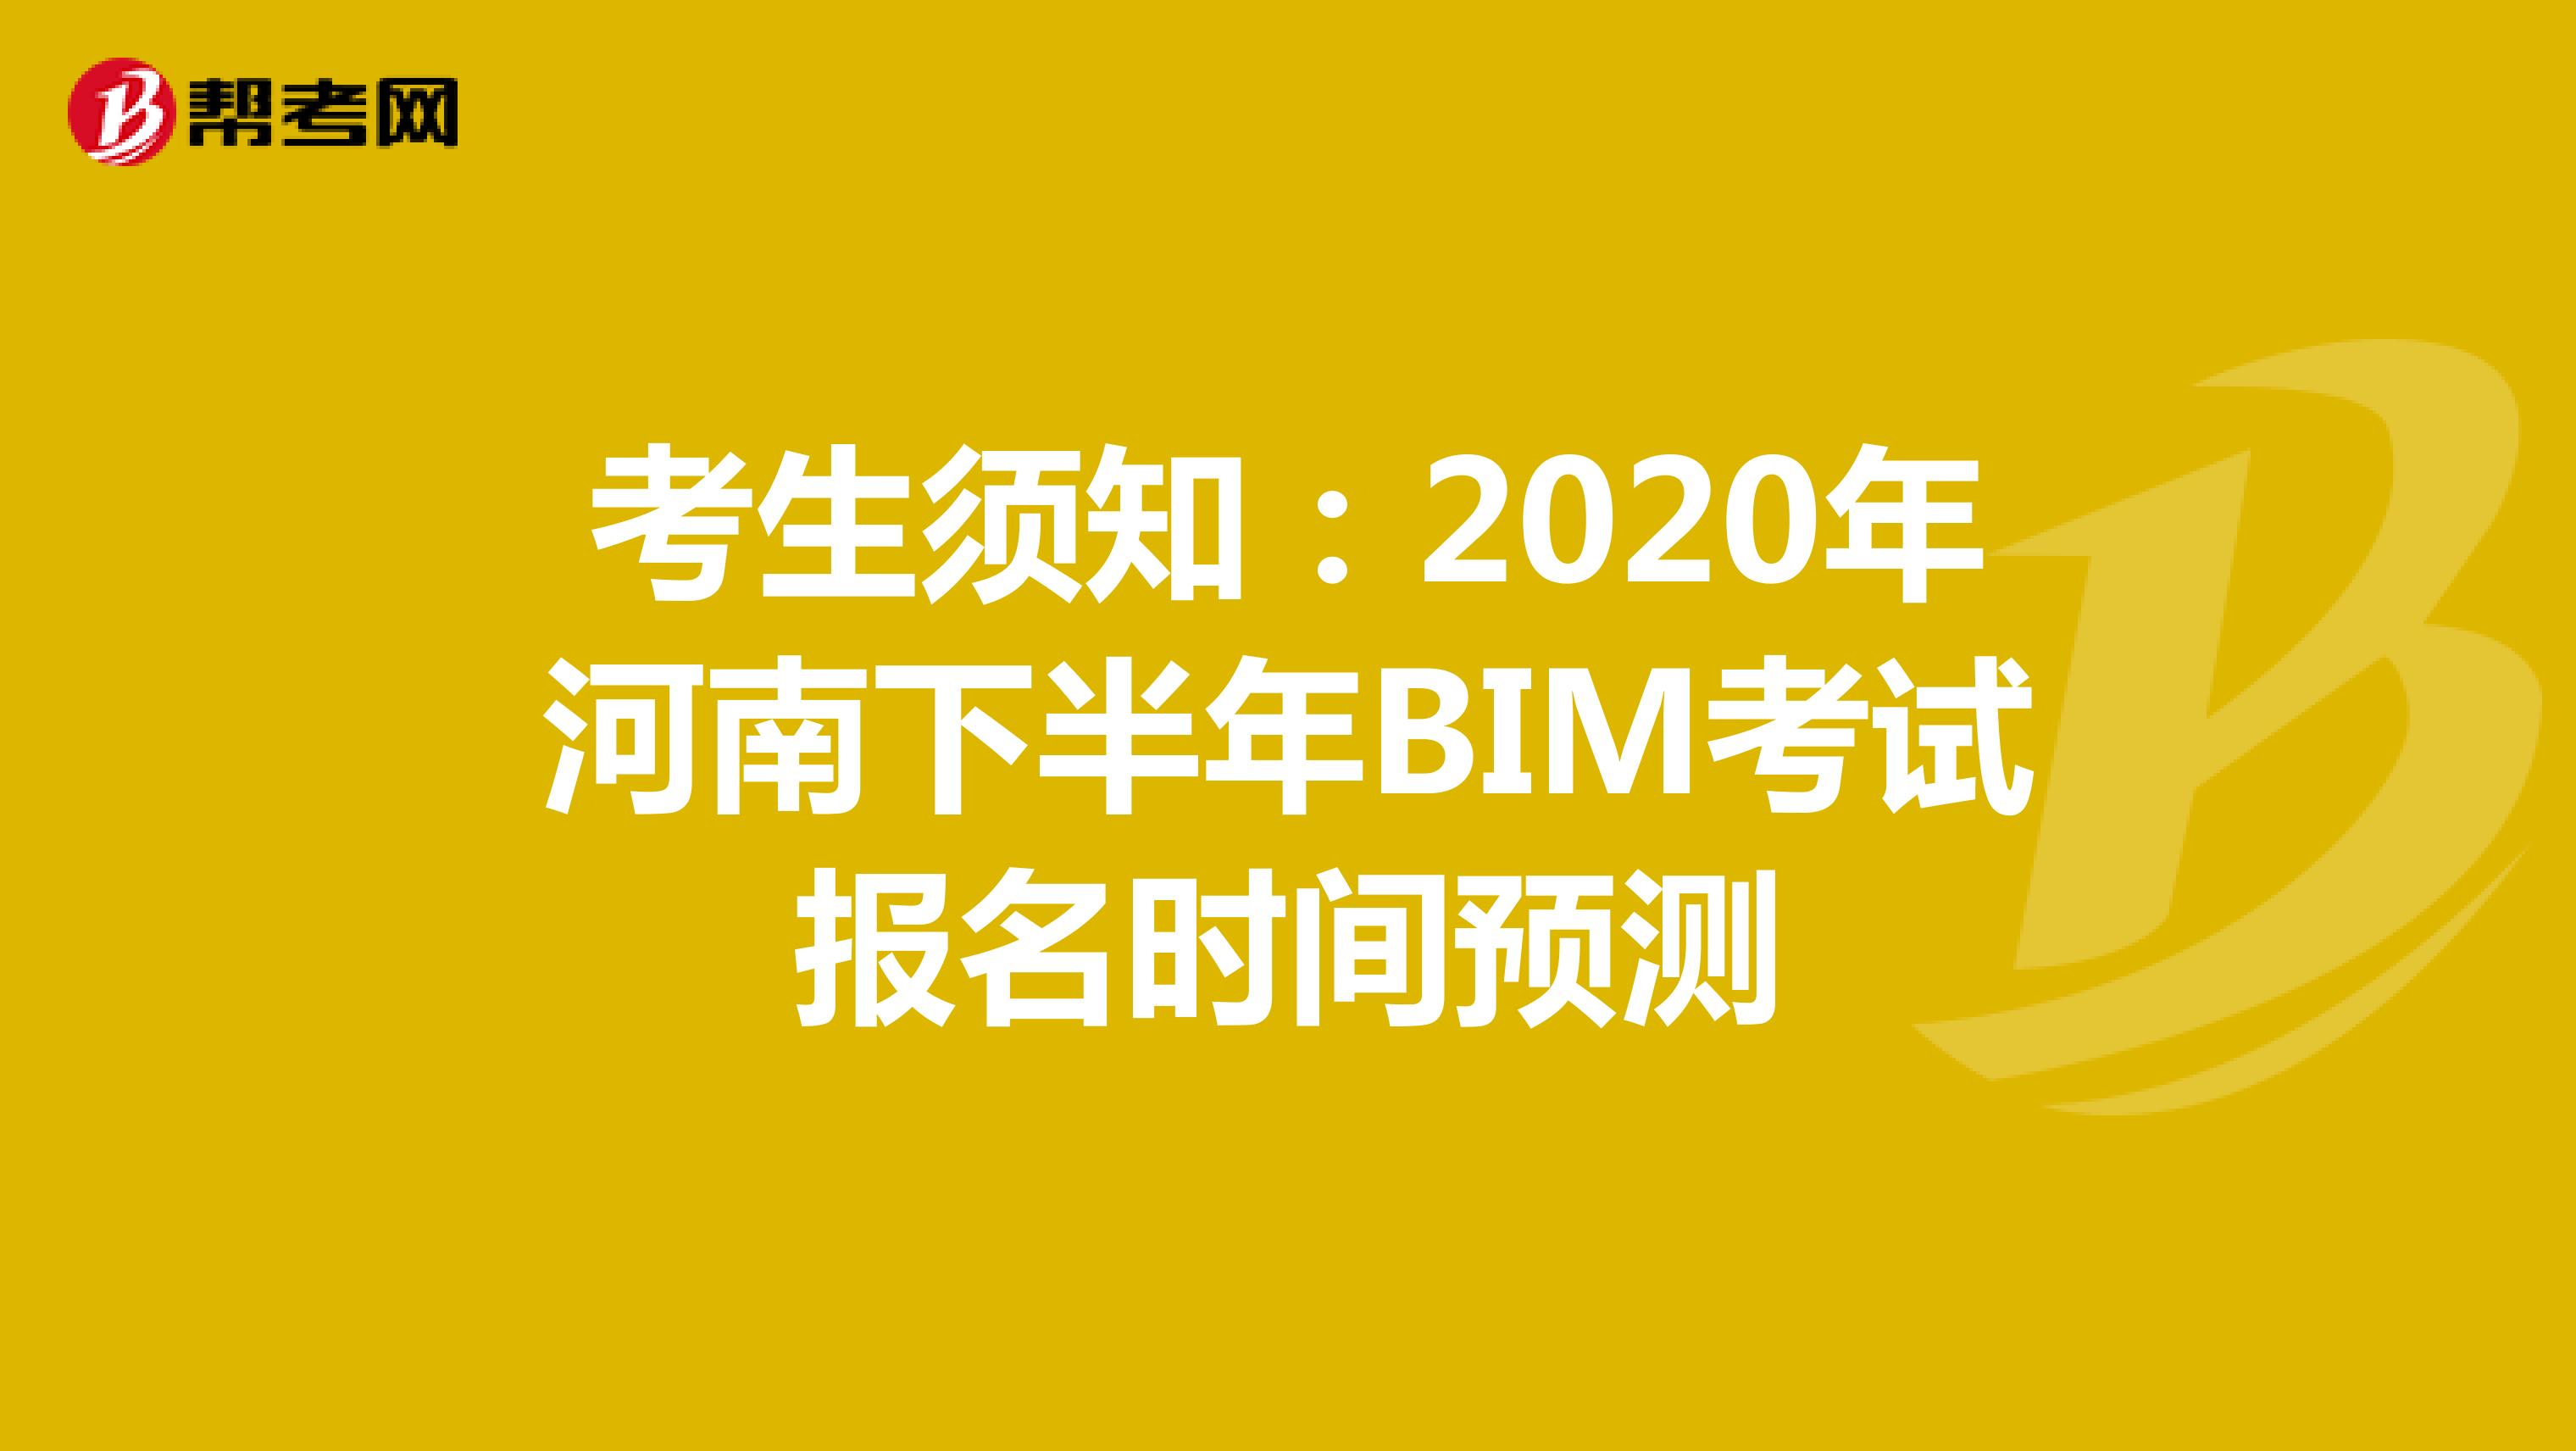 考生须知：2020年河南下半年BIM考试报名时间预测